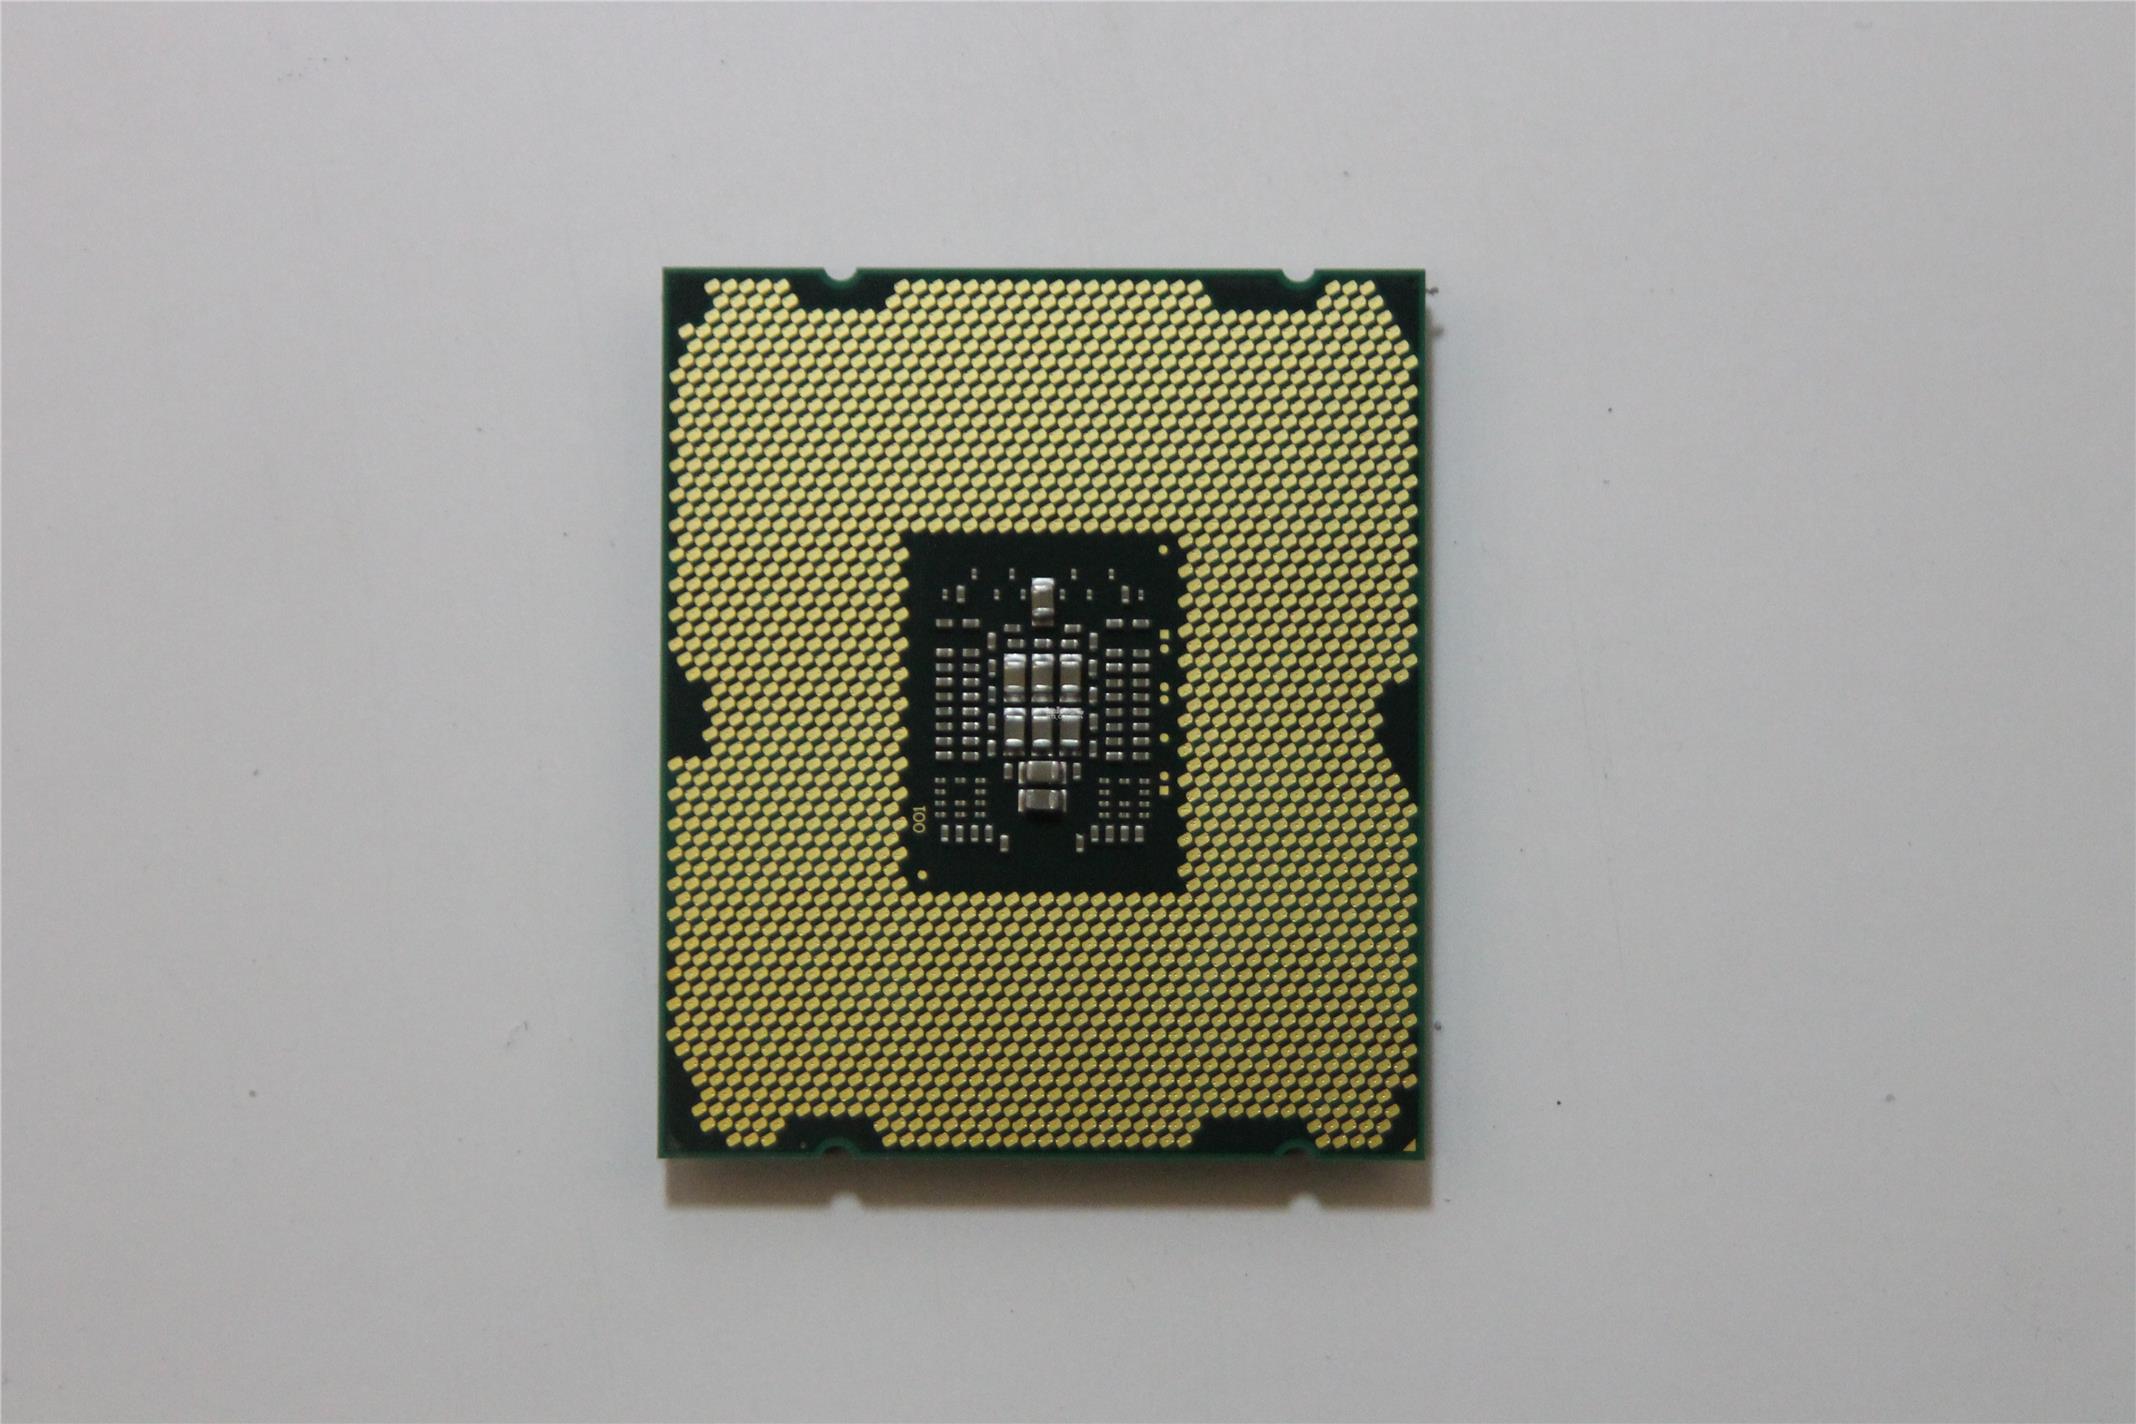 Intel Xeon Processor 4C E5-2609 (10M Cache, 2.4GHz,LGA2011) (SR0LA)